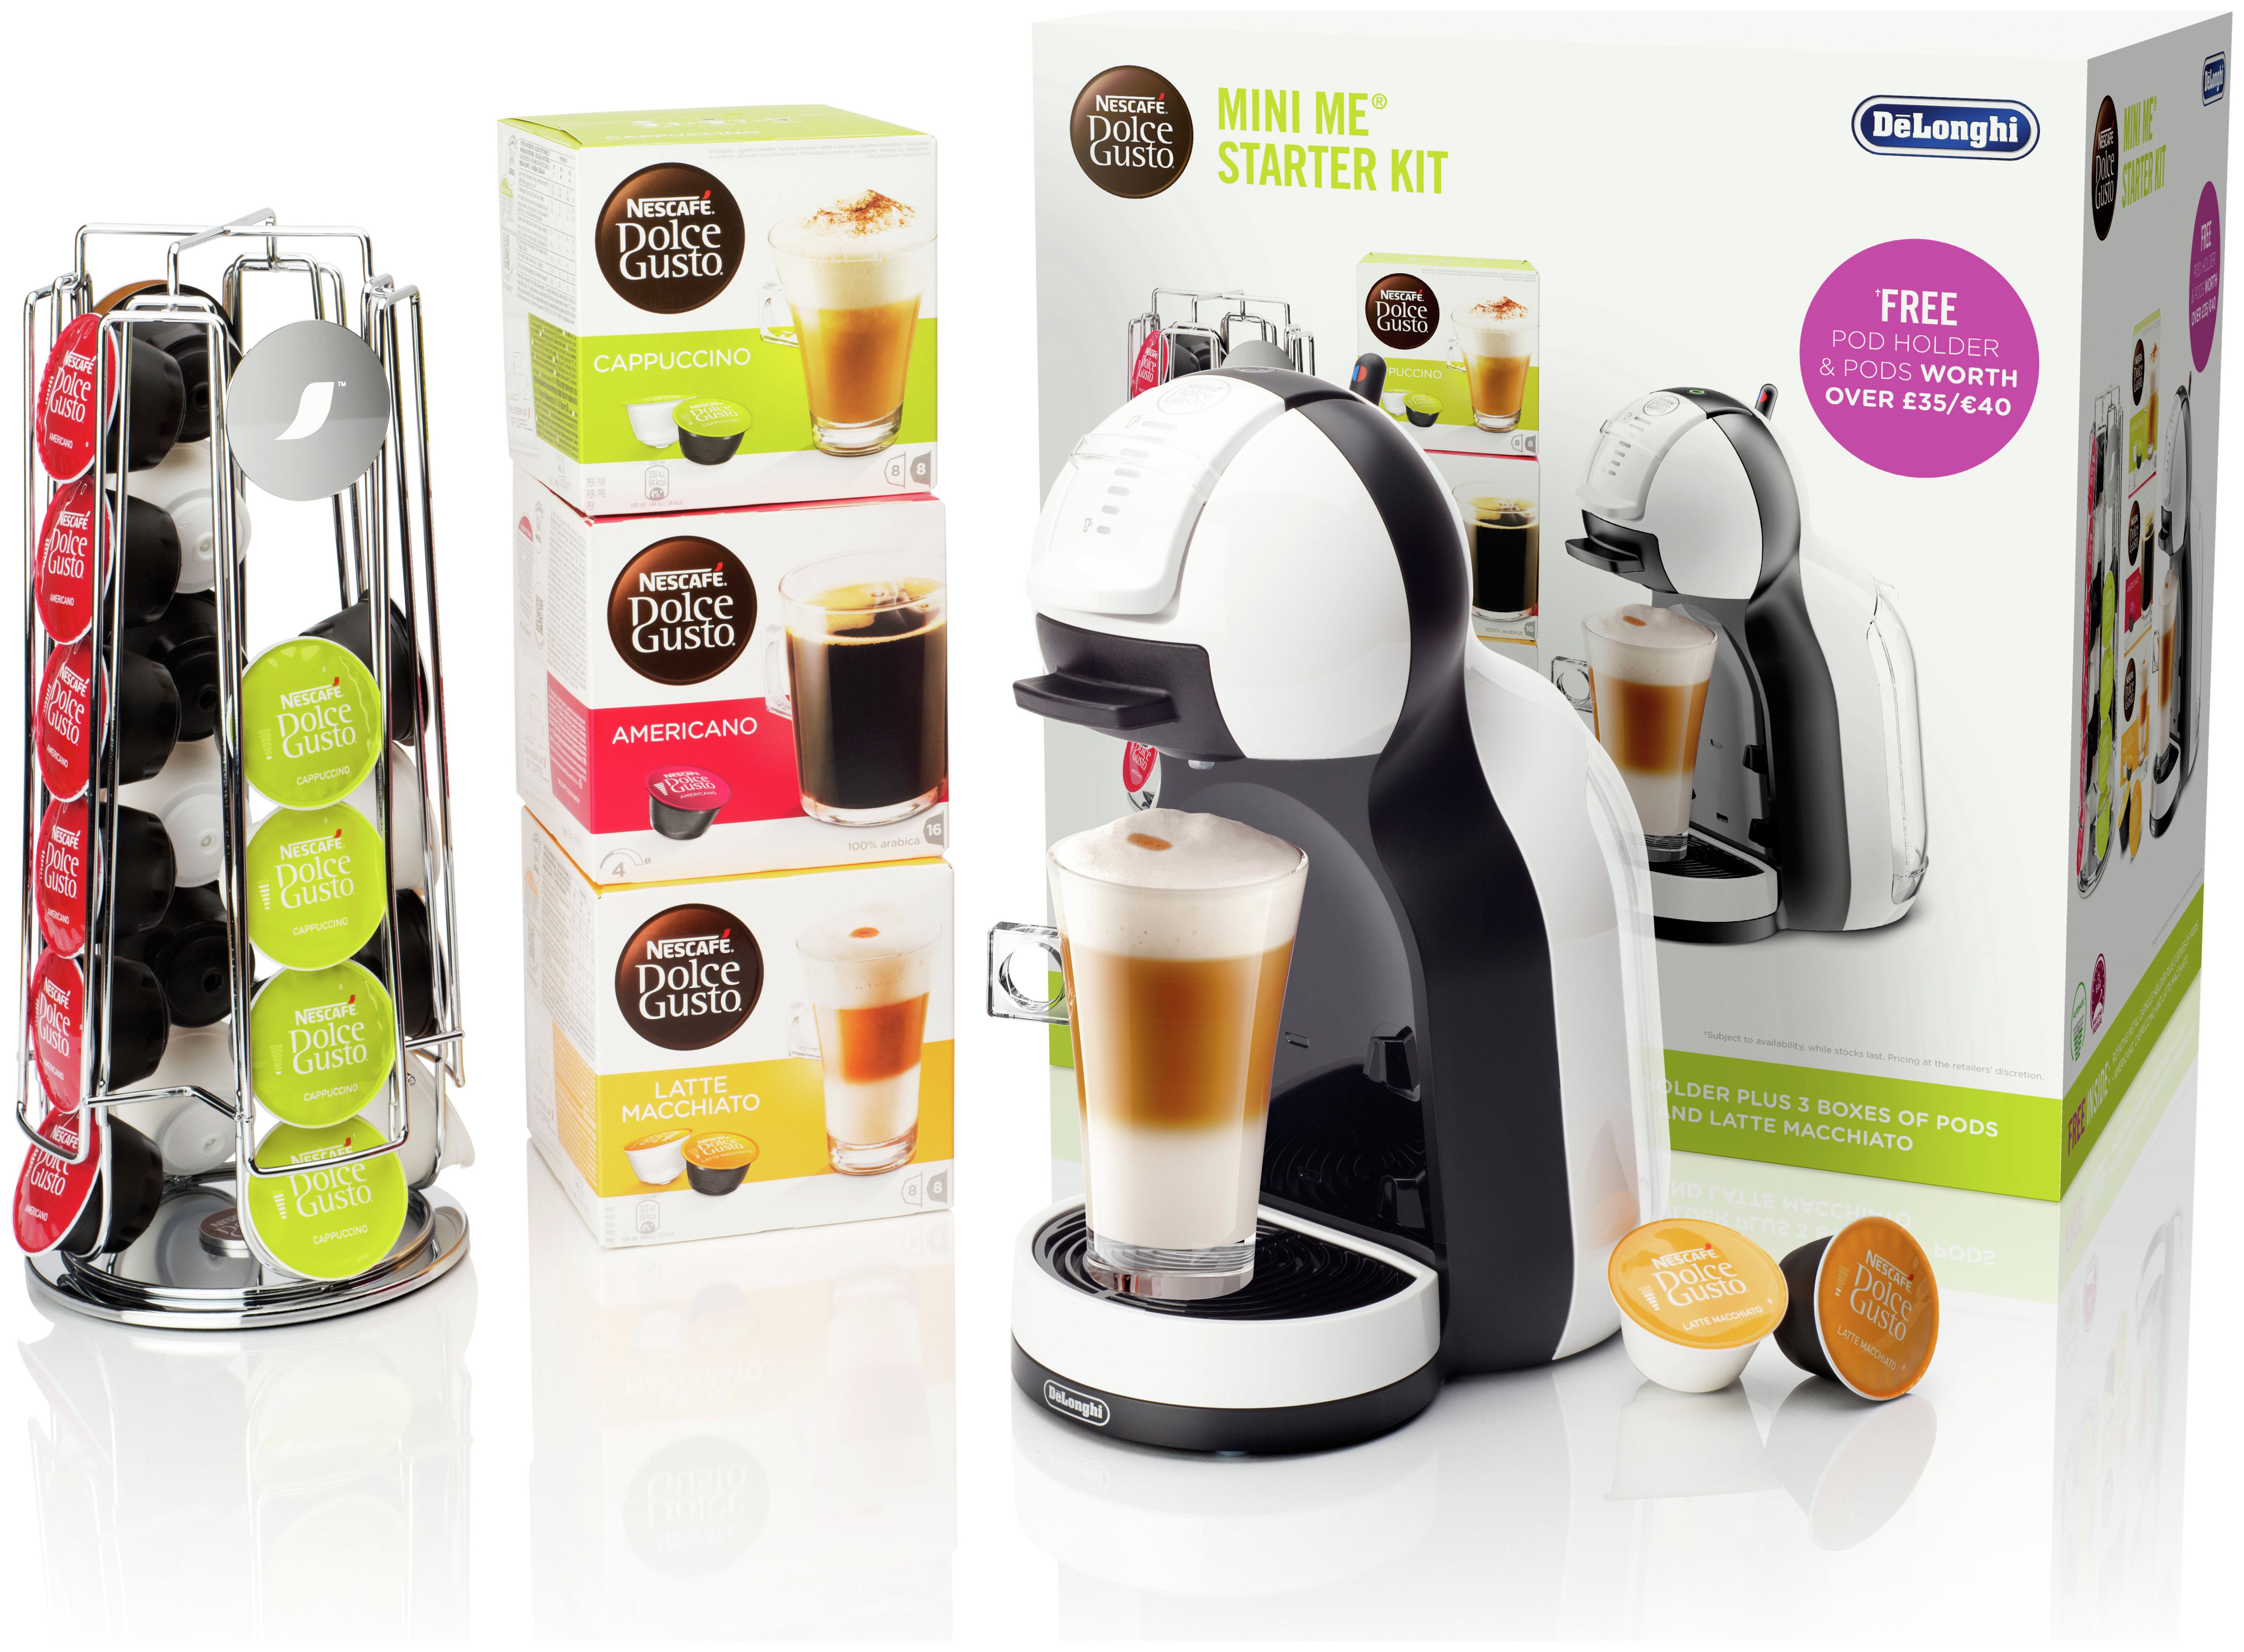 Nescafe Dolce Gusto Mini Me Coffee Starter Kit (6866420) | Argos Price ...